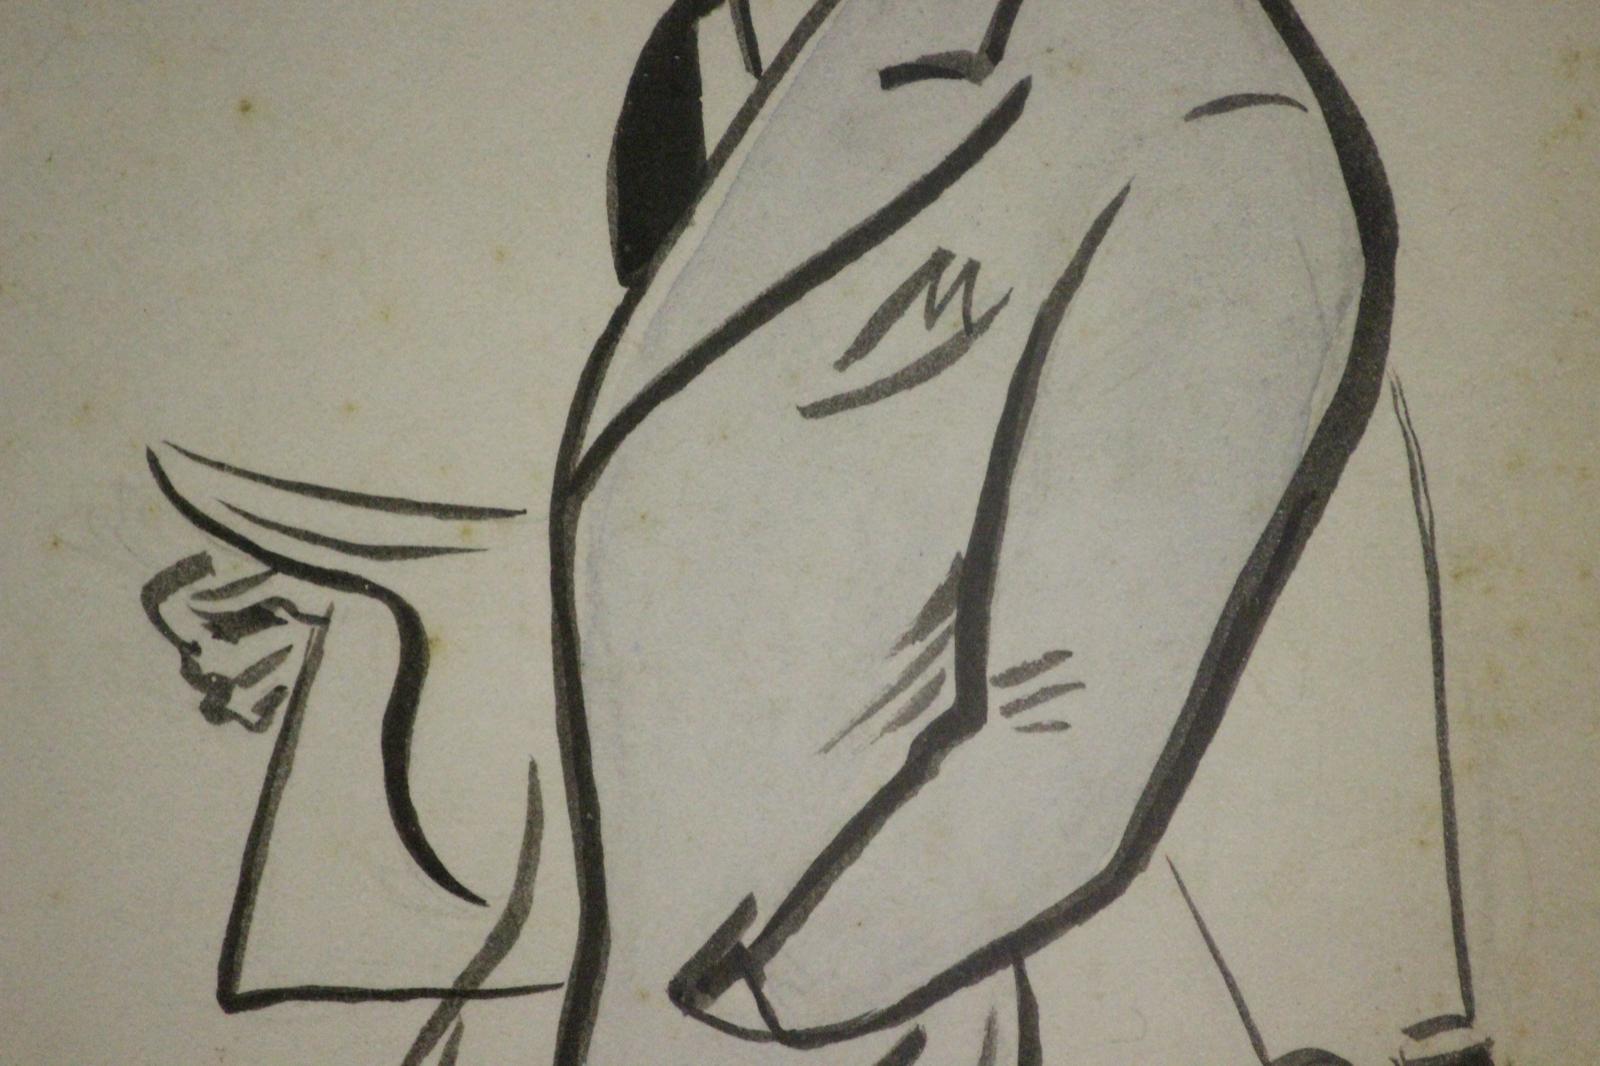 Klassische englische Rasenkarikatur mit Feder und Tinte aus dem Jahr 1947 von Maj J.G. Goldsmith, Turf-Pferdetrainer, gezeichnet von dem Sportkünstler Peter Buchanan 'The Tout' (1870-1950)

Kunst Sz: 7 1/8 